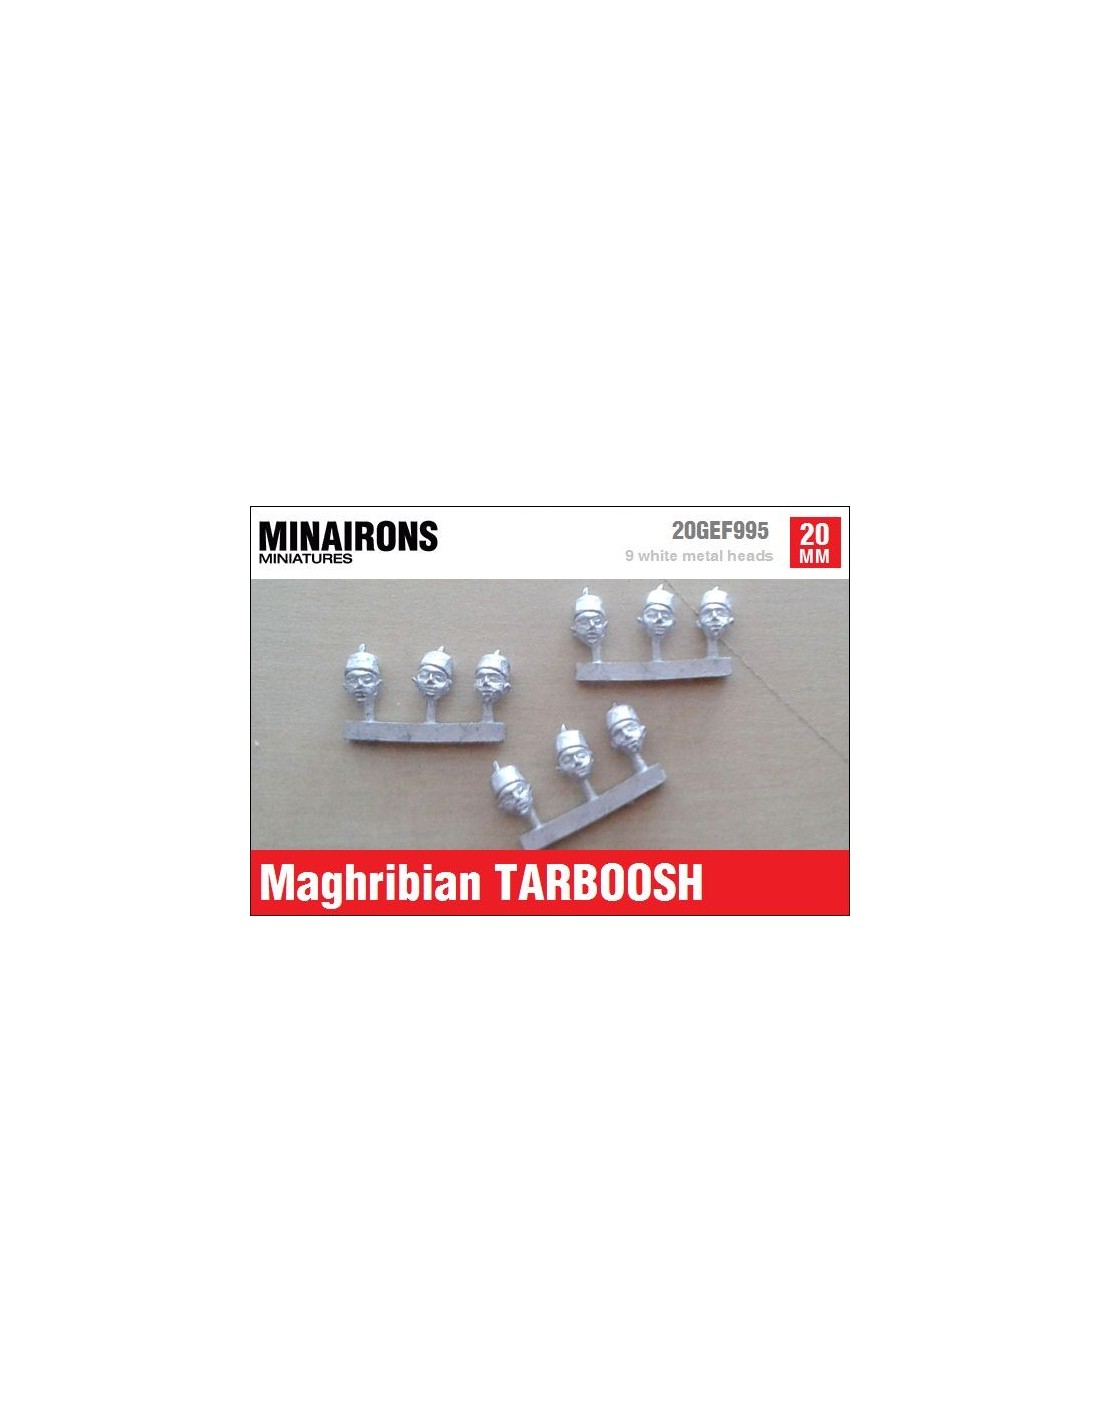 Maghribian Taboosh, Male [MNA-20GEF995]